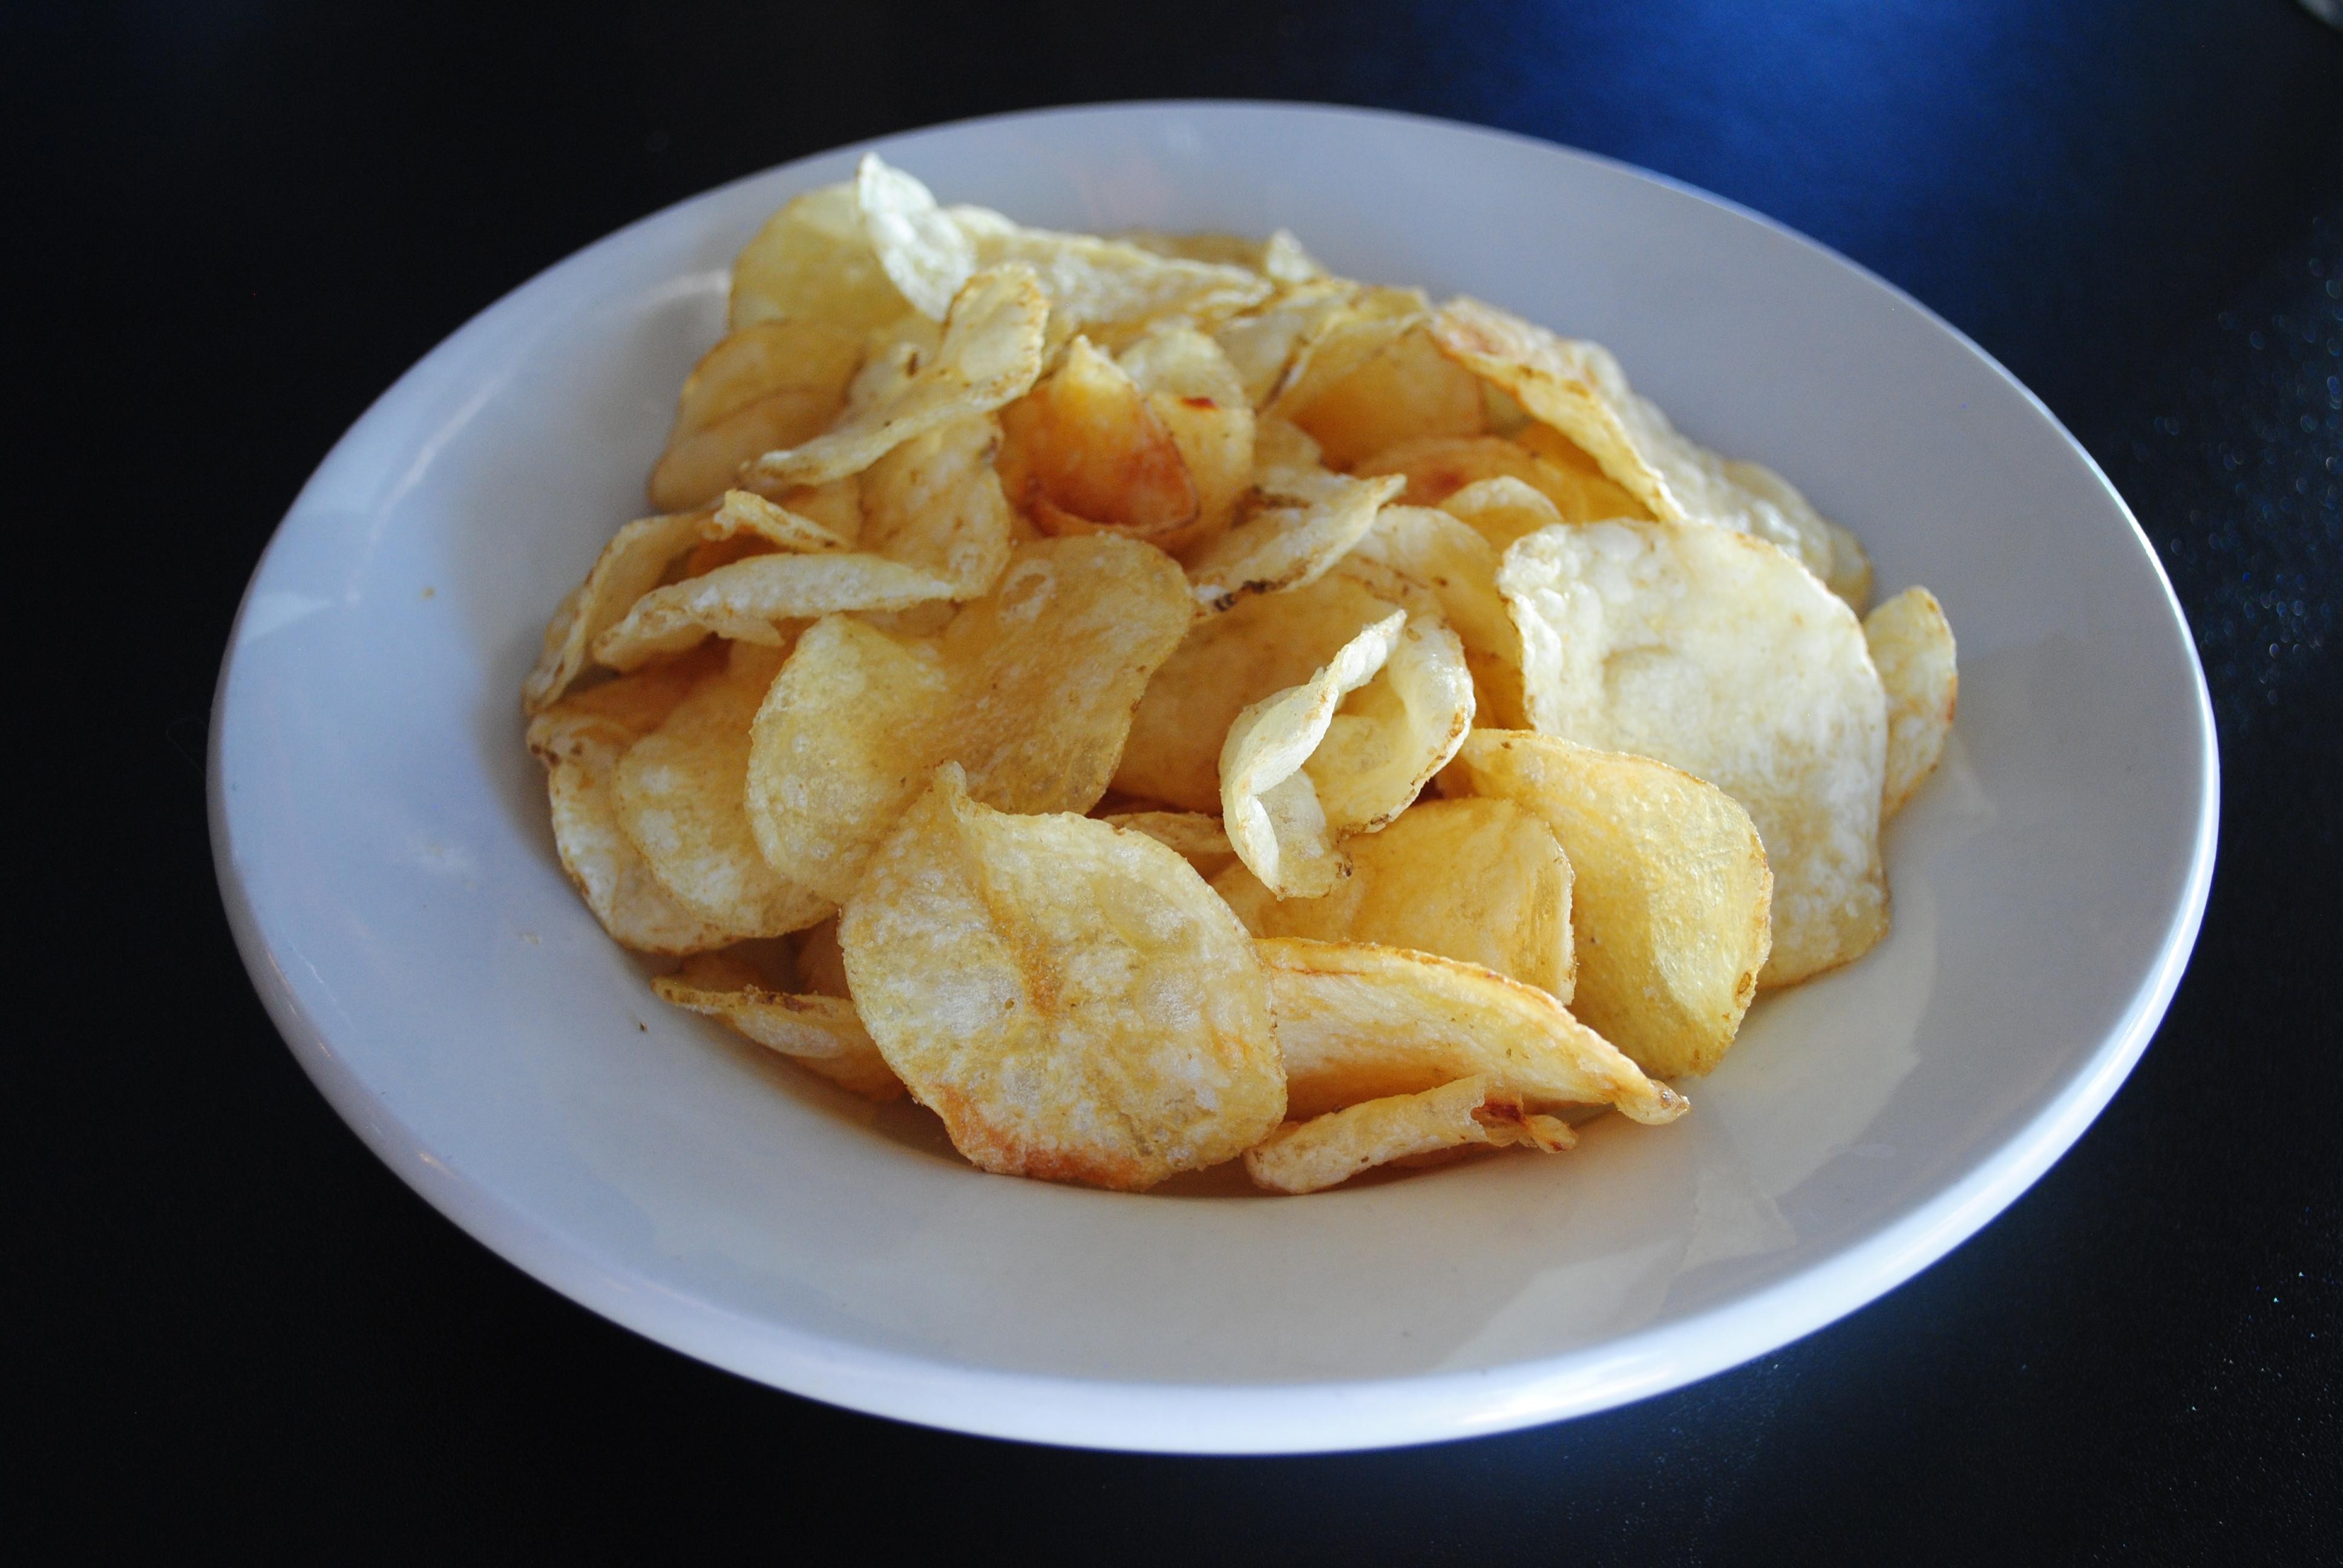 Large Order of Kettle Chips